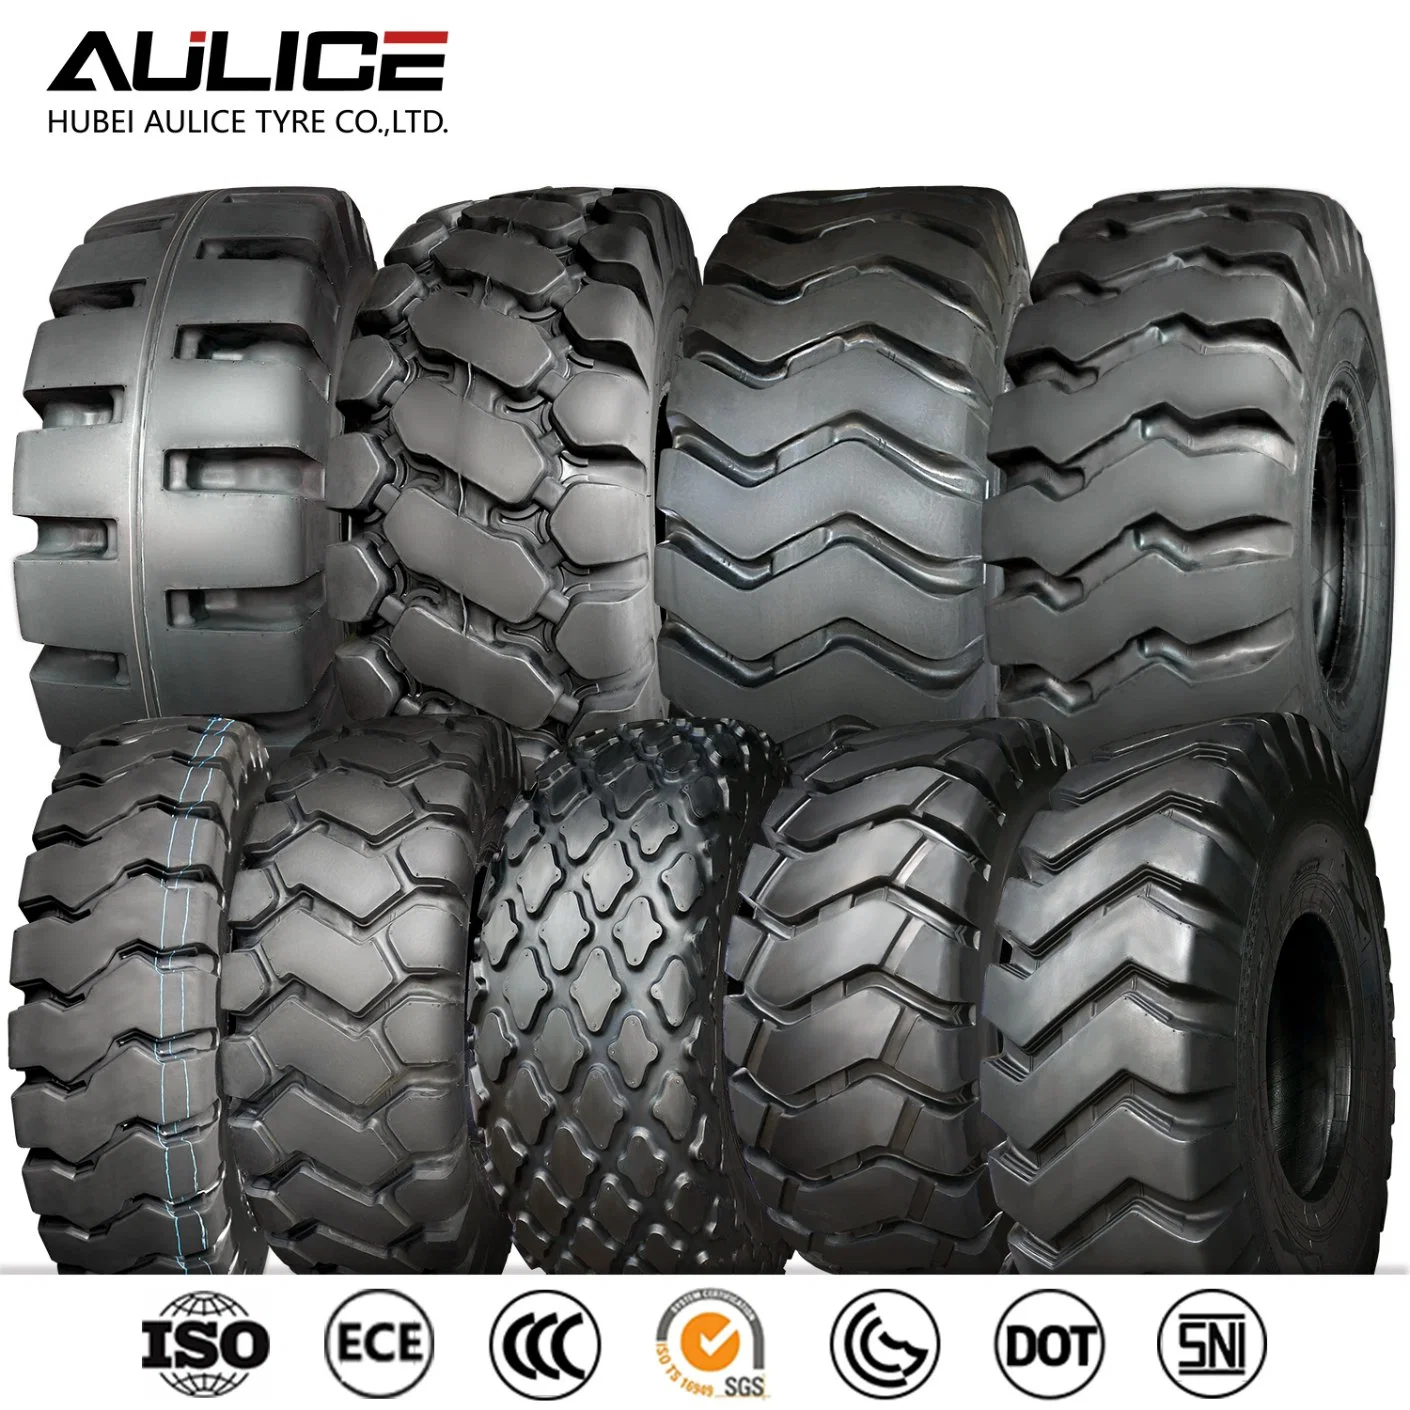 17.5-25 E-3/L-3 AULICE OTR завод по производству шин, шины для легких грузовиков для карьерных разработок более высокая износостойкость высокая прочность